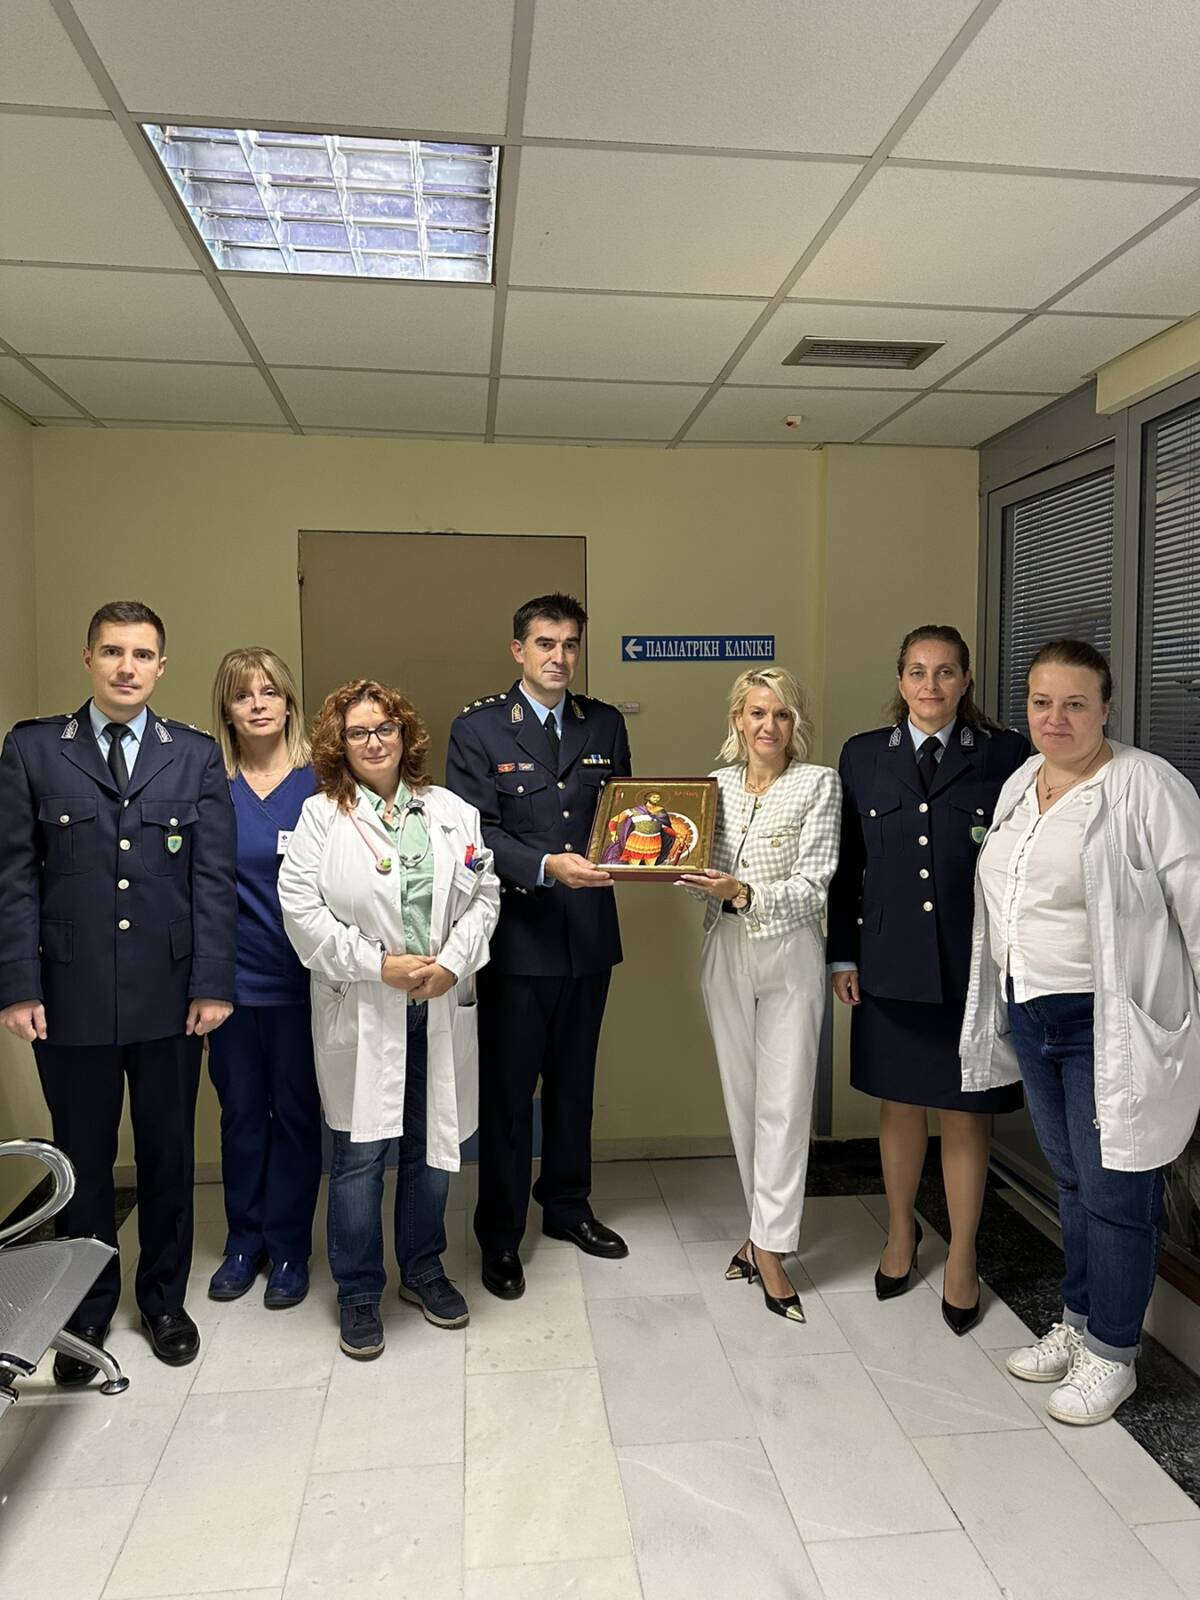 Γενική Περιφερειακή Αστυνομική Διεύθυνση Δυτικής Μακεδονίας: Επίσκεψη στα Γενικά Νοσοκομεία των πόλεων Γρεβενών, Καστοριάς, Κοζάνης, Πτολεμαΐδας και Φλώρινας